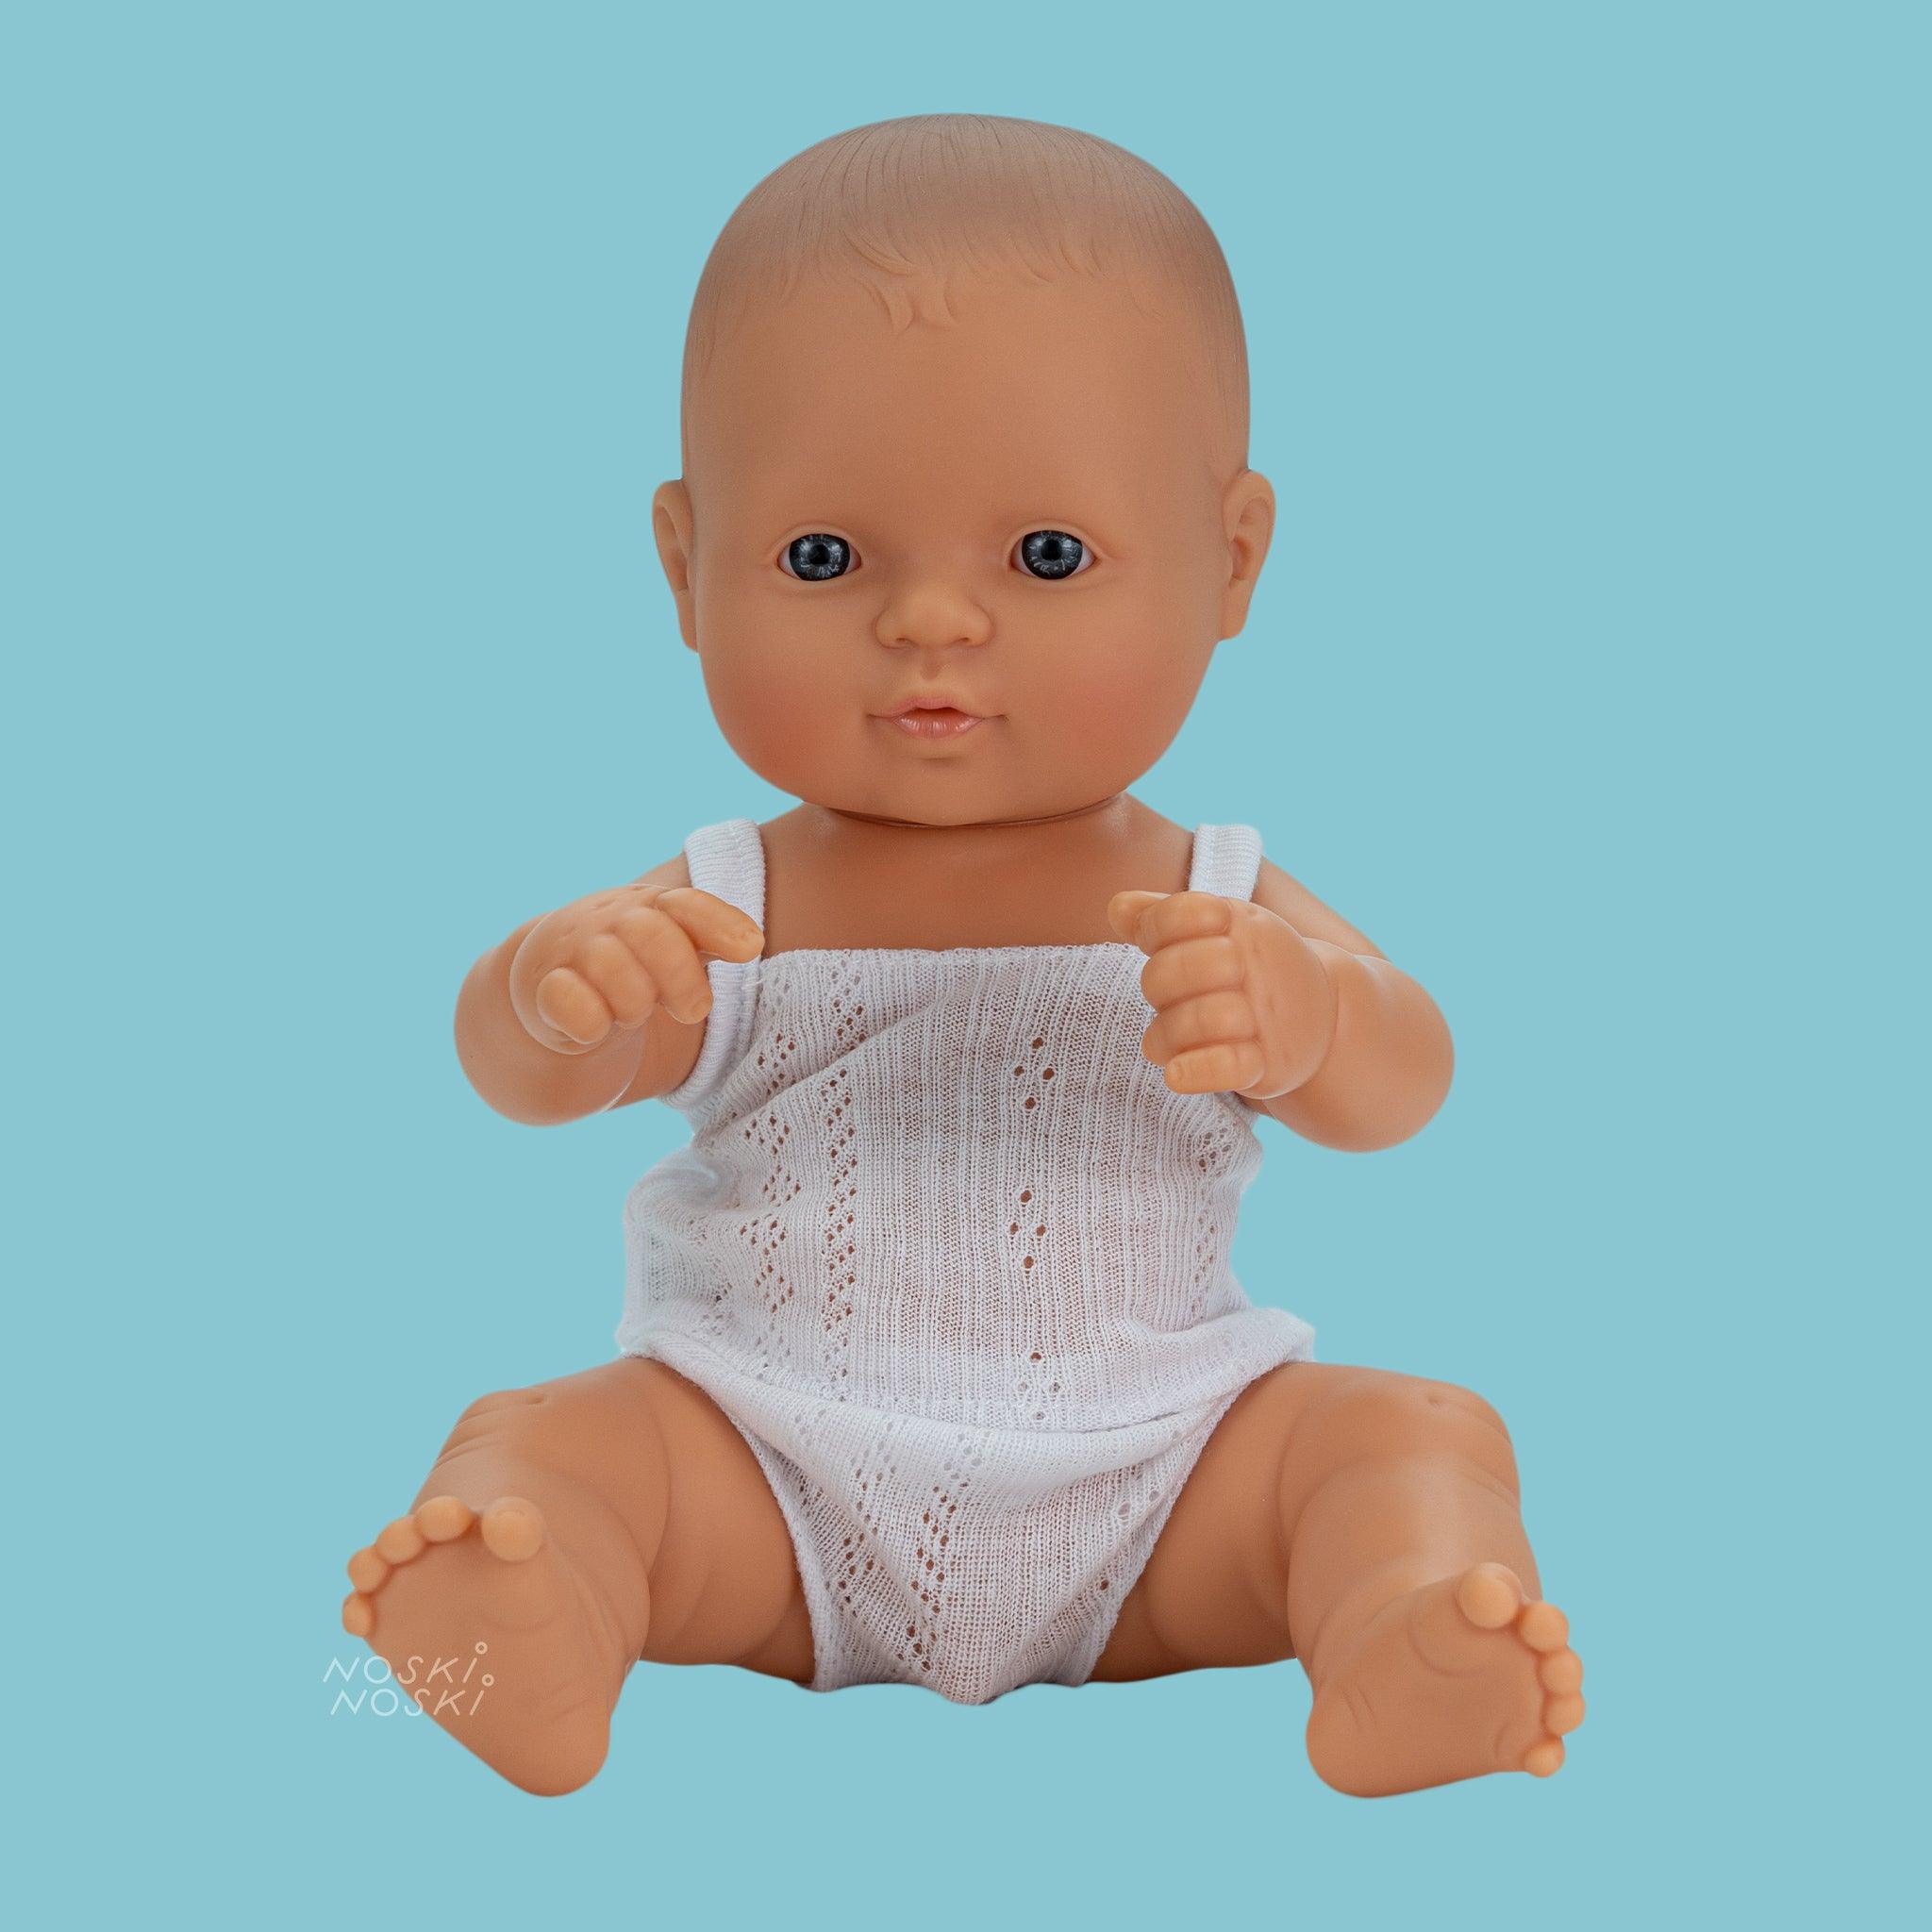 Miniland: Baby boy European doll 32 cm